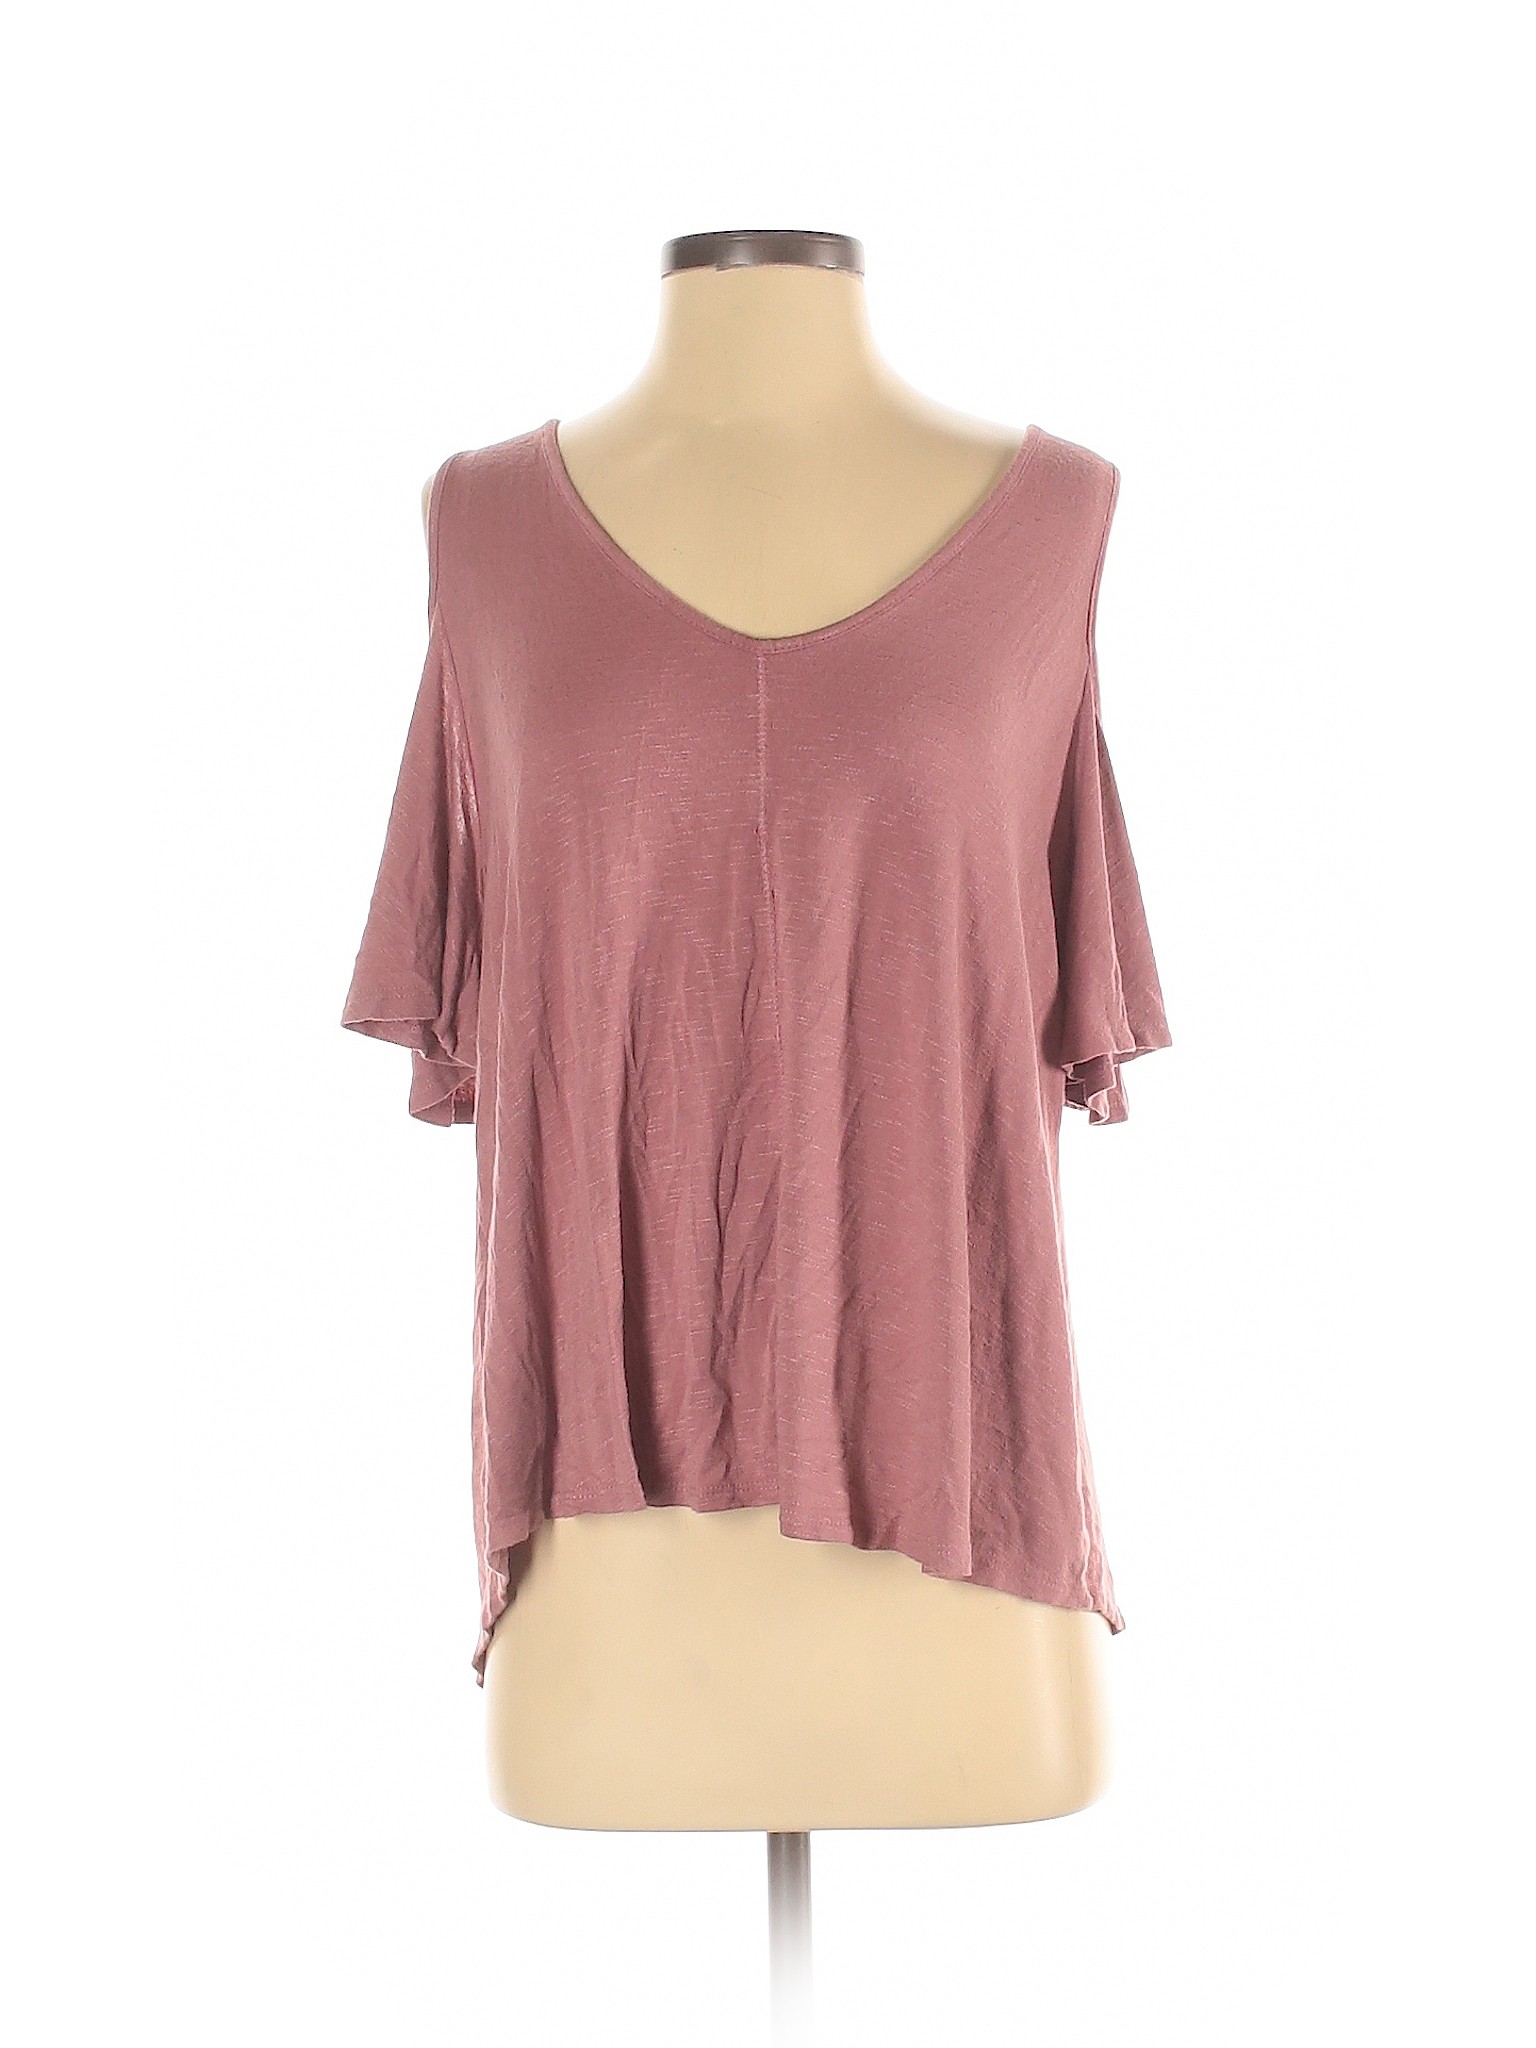 Assorted Brands Women Pink Short Sleeve Top S | eBay